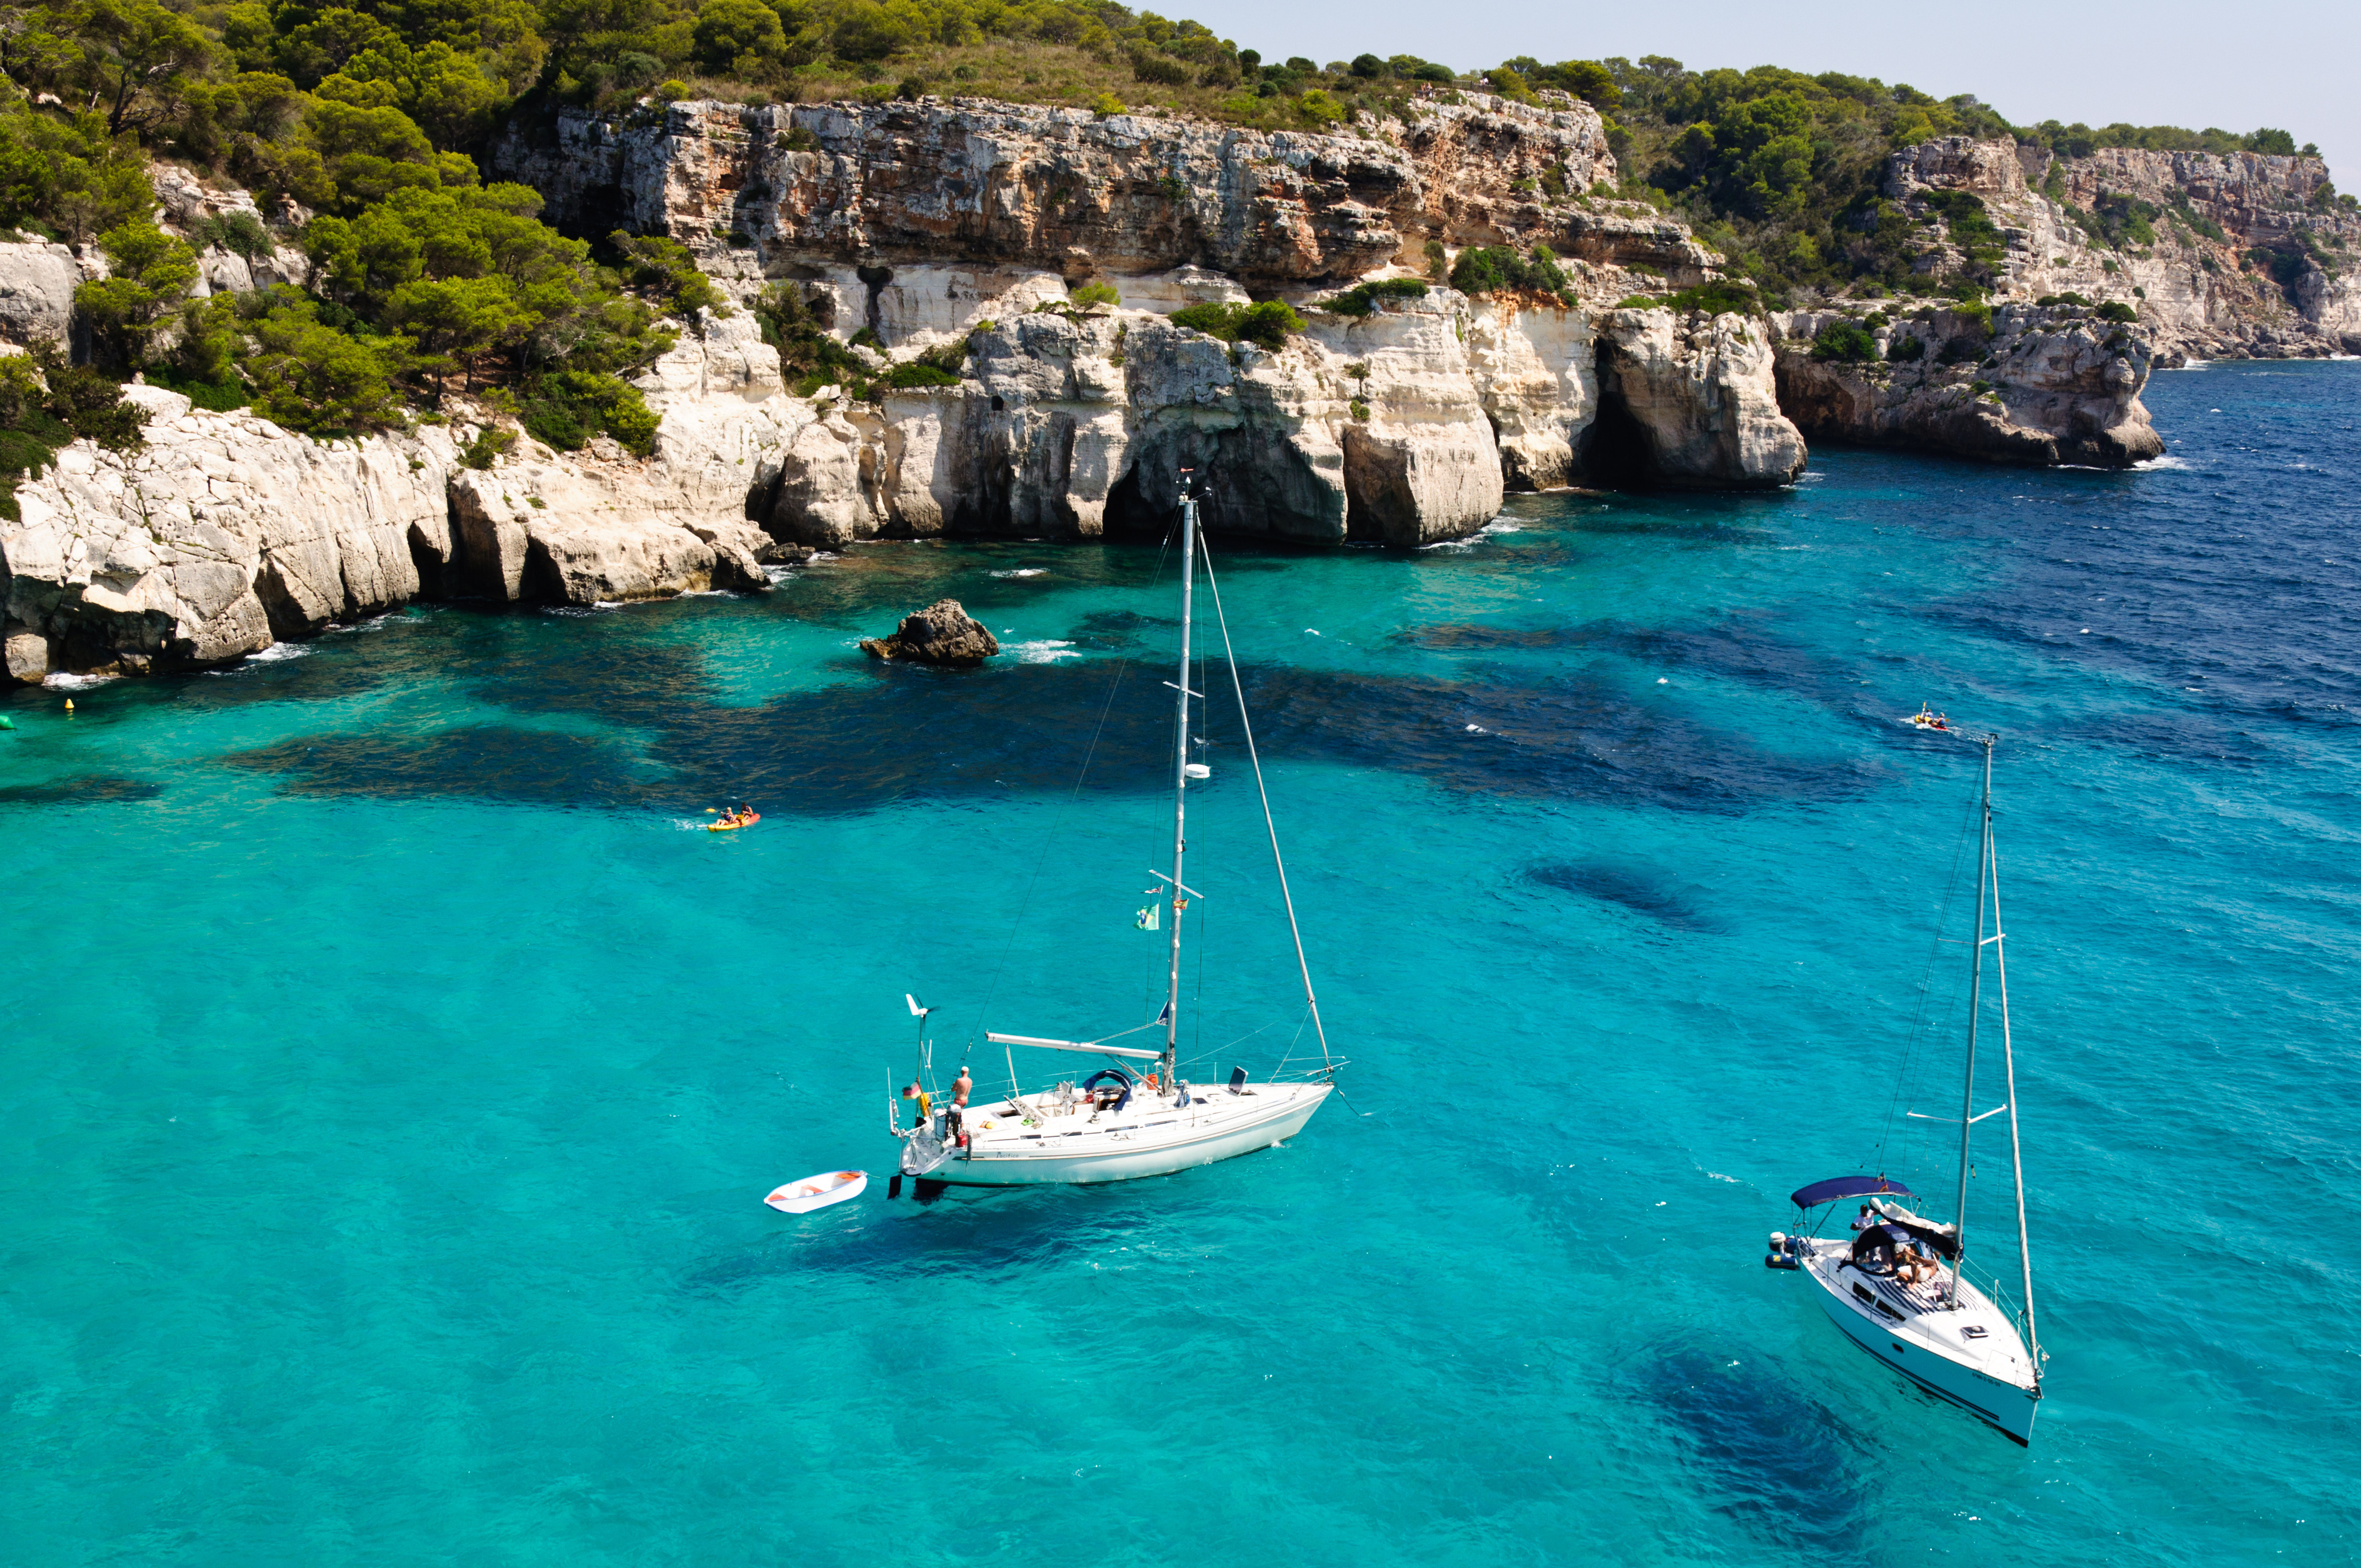 Resa till Menorica - Segelbåtar på turkosblått vatten vid klippiga kusten med frodig grönska.